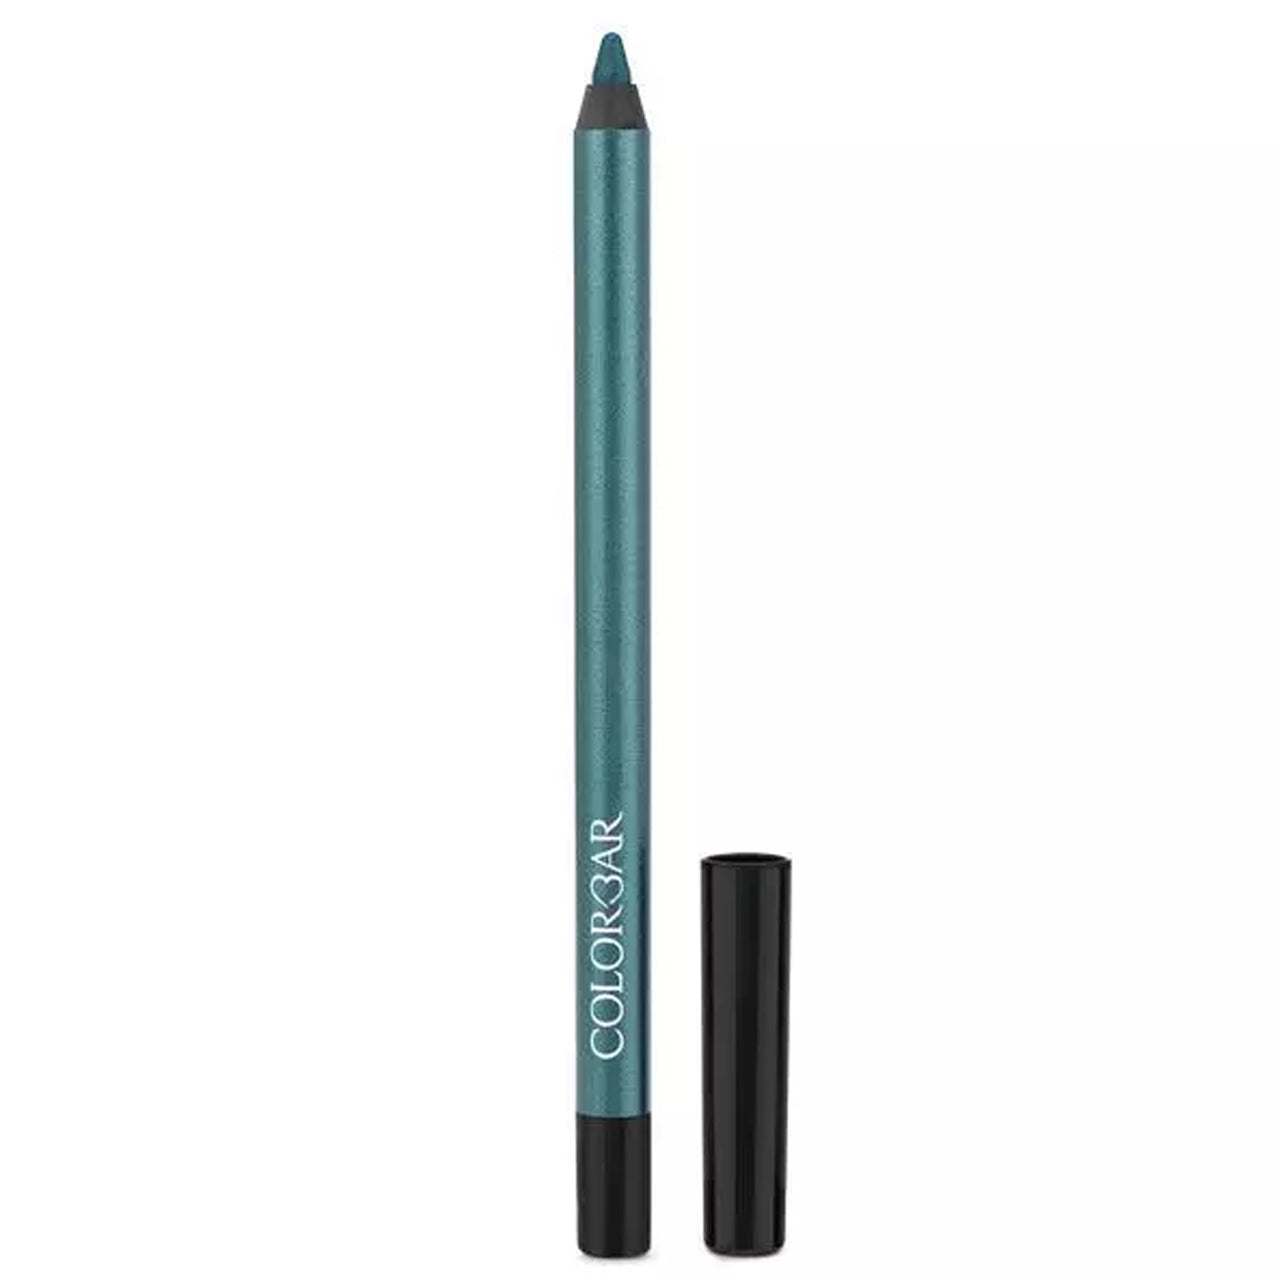 Colorbar I-Glide Eye Pencil - New Peacock Throne - Distacart